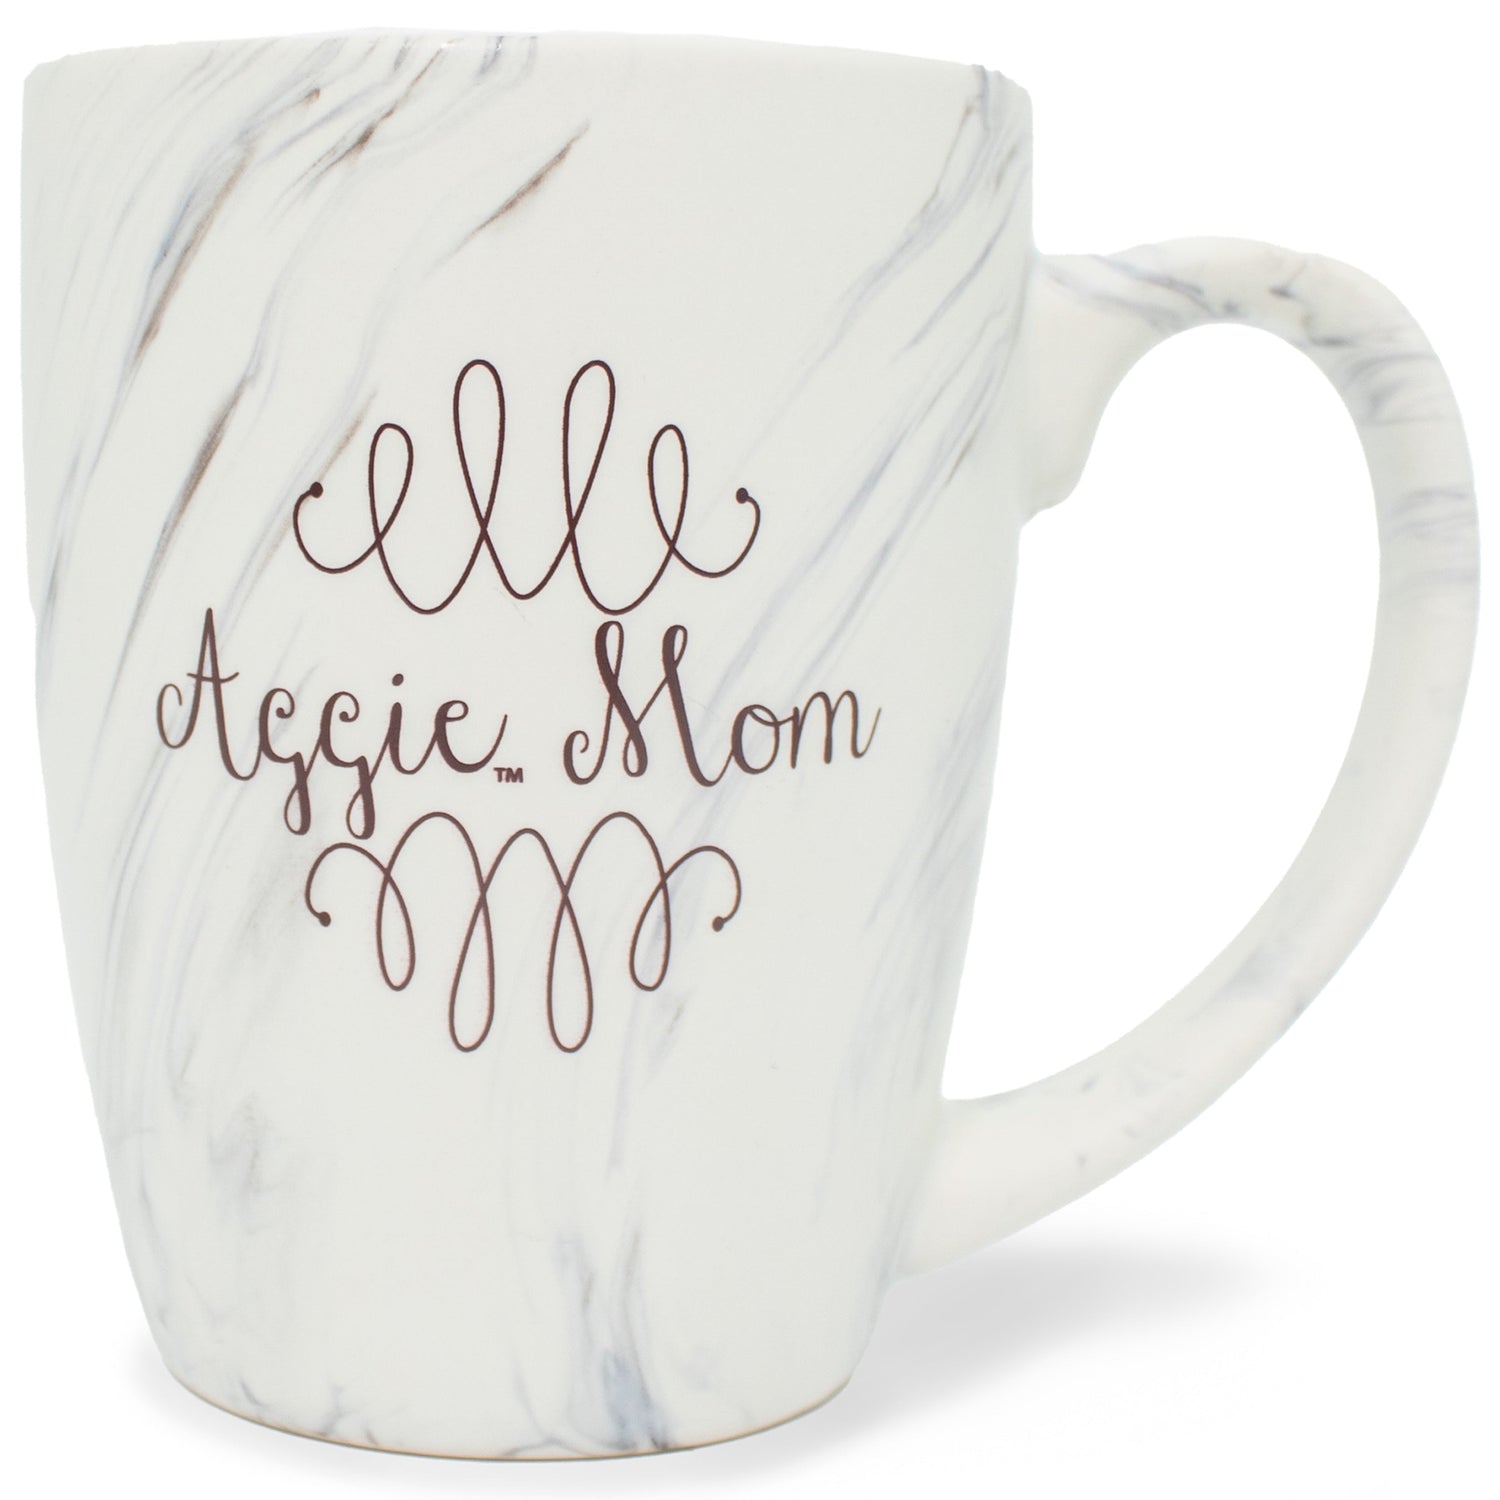 Aggie Mom CarrarA&Marble 12oz Mug